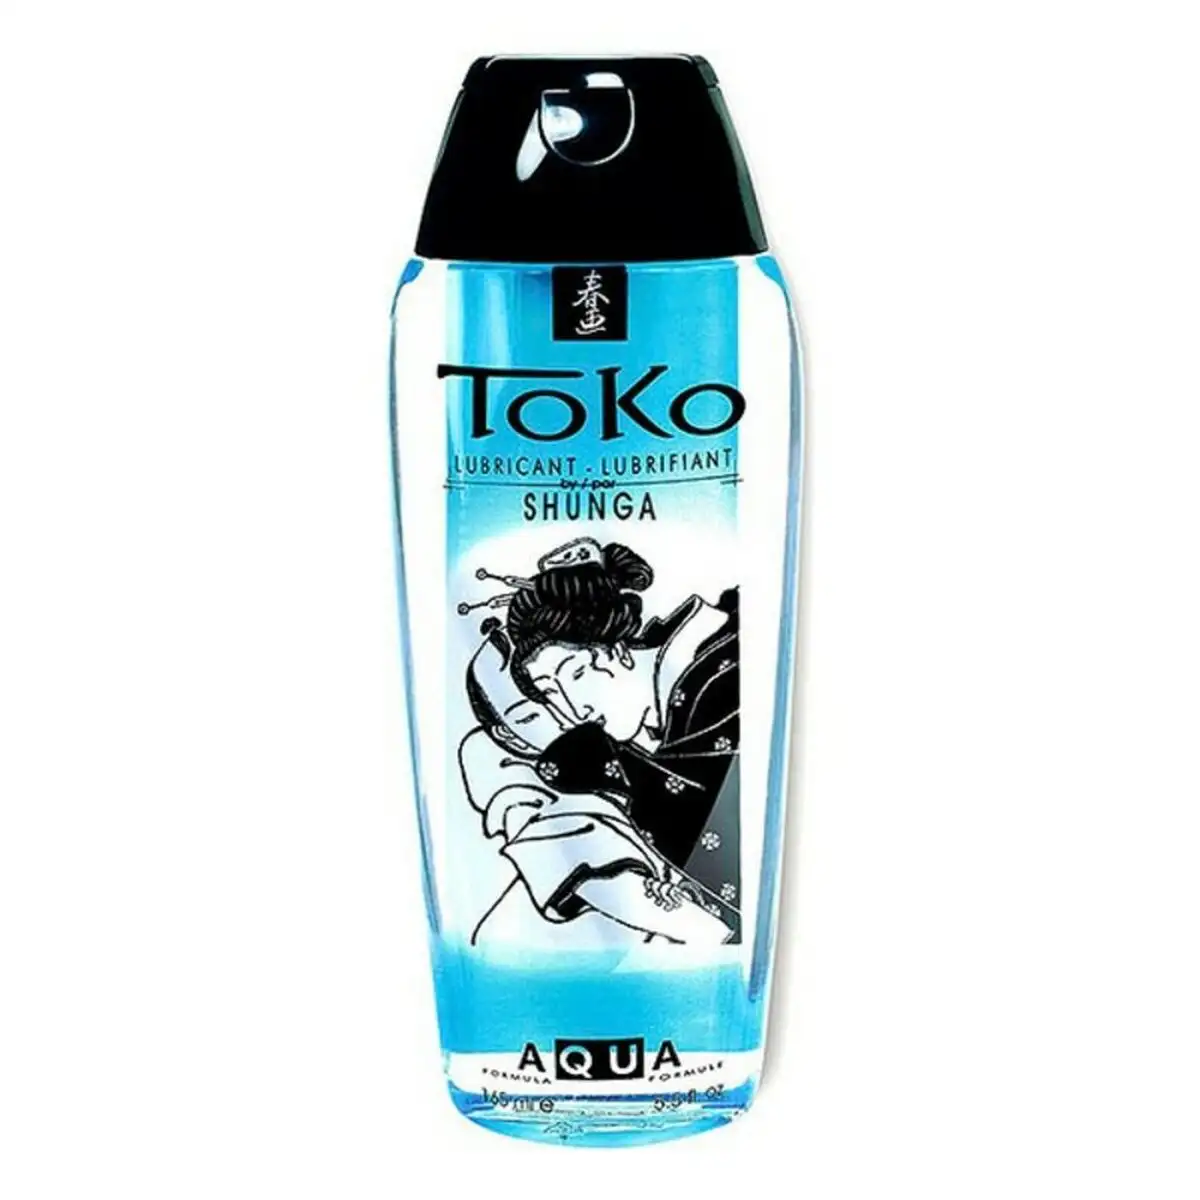 Toko lubrifiant a base d eau shunga 3100003580 165 ml 165 ml_3617. Bienvenue sur DIAYTAR SENEGAL - Où le Shopping est une Affaire Personnelle. Découvrez notre sélection et choisissez des produits qui reflètent votre unicité et votre individualité.